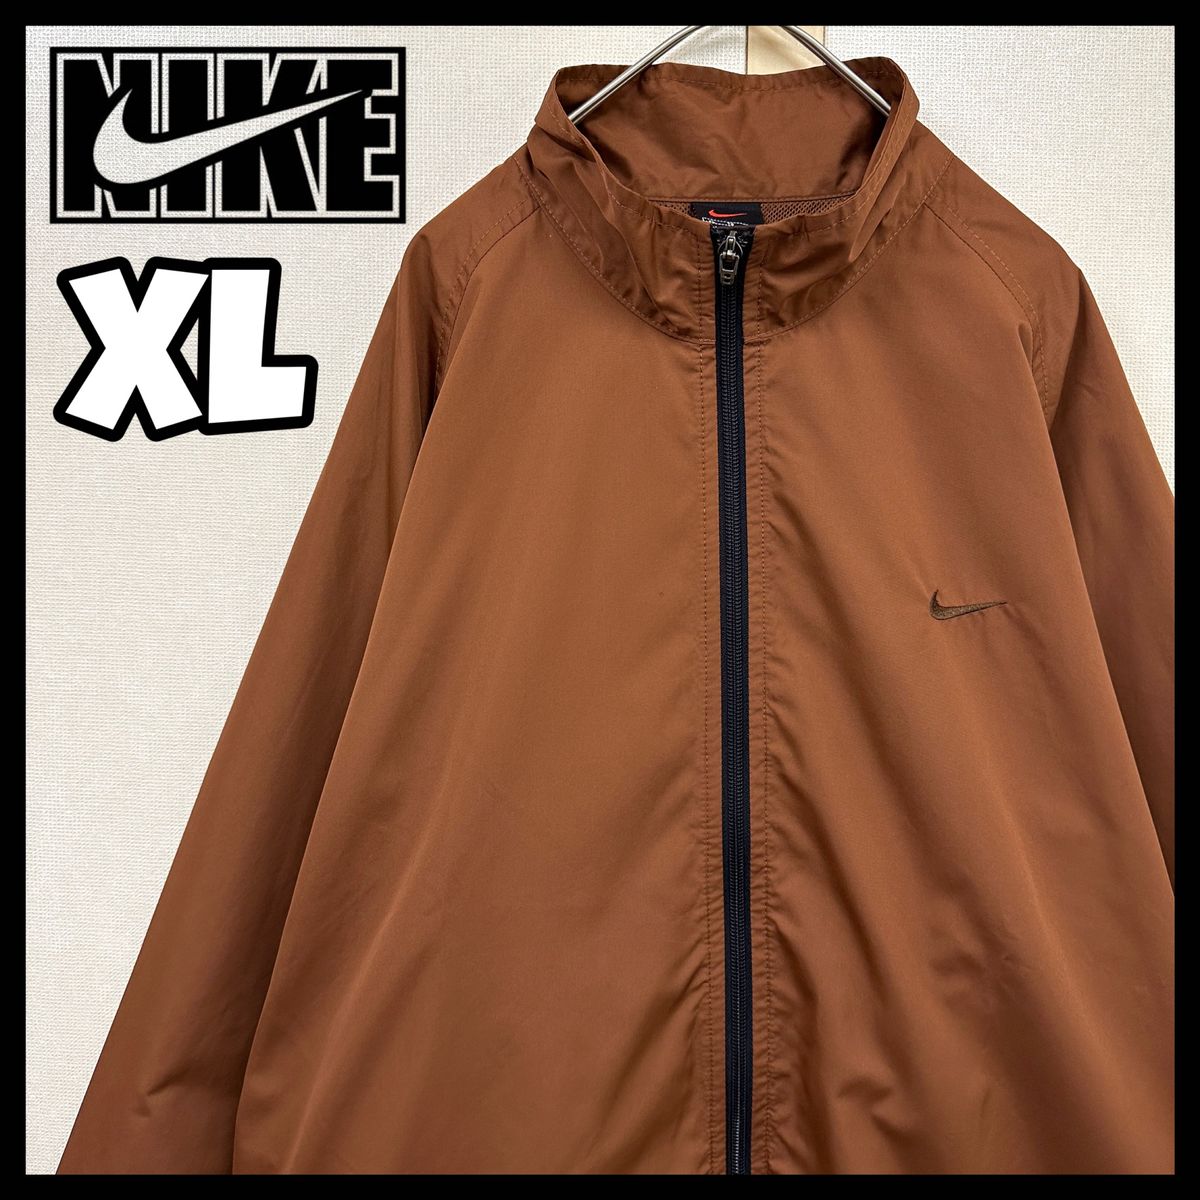 90s NIKEナイロンジャケットブラウン 茶色 刺繍ロゴ オーバーサイズ XL